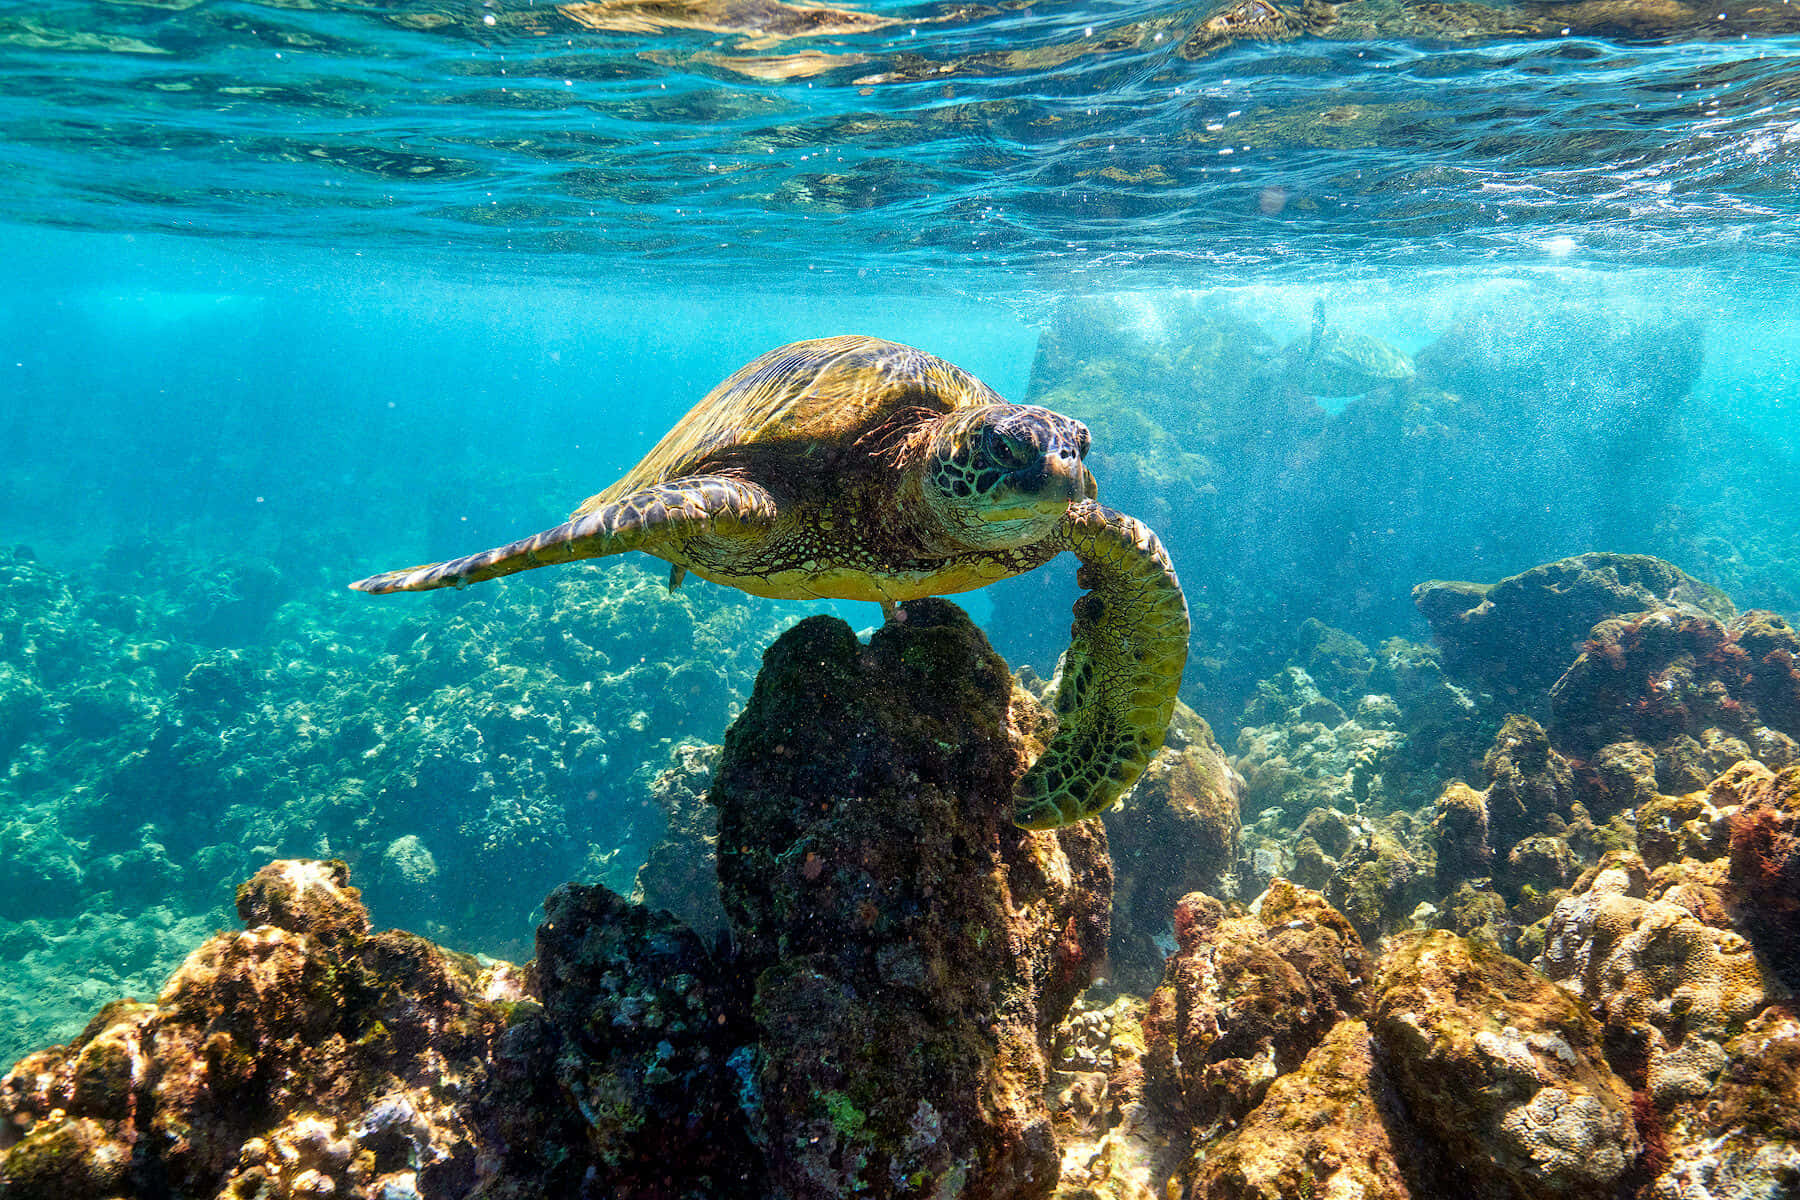 A Green Turtle Swimming In The Ocean Near Rocks